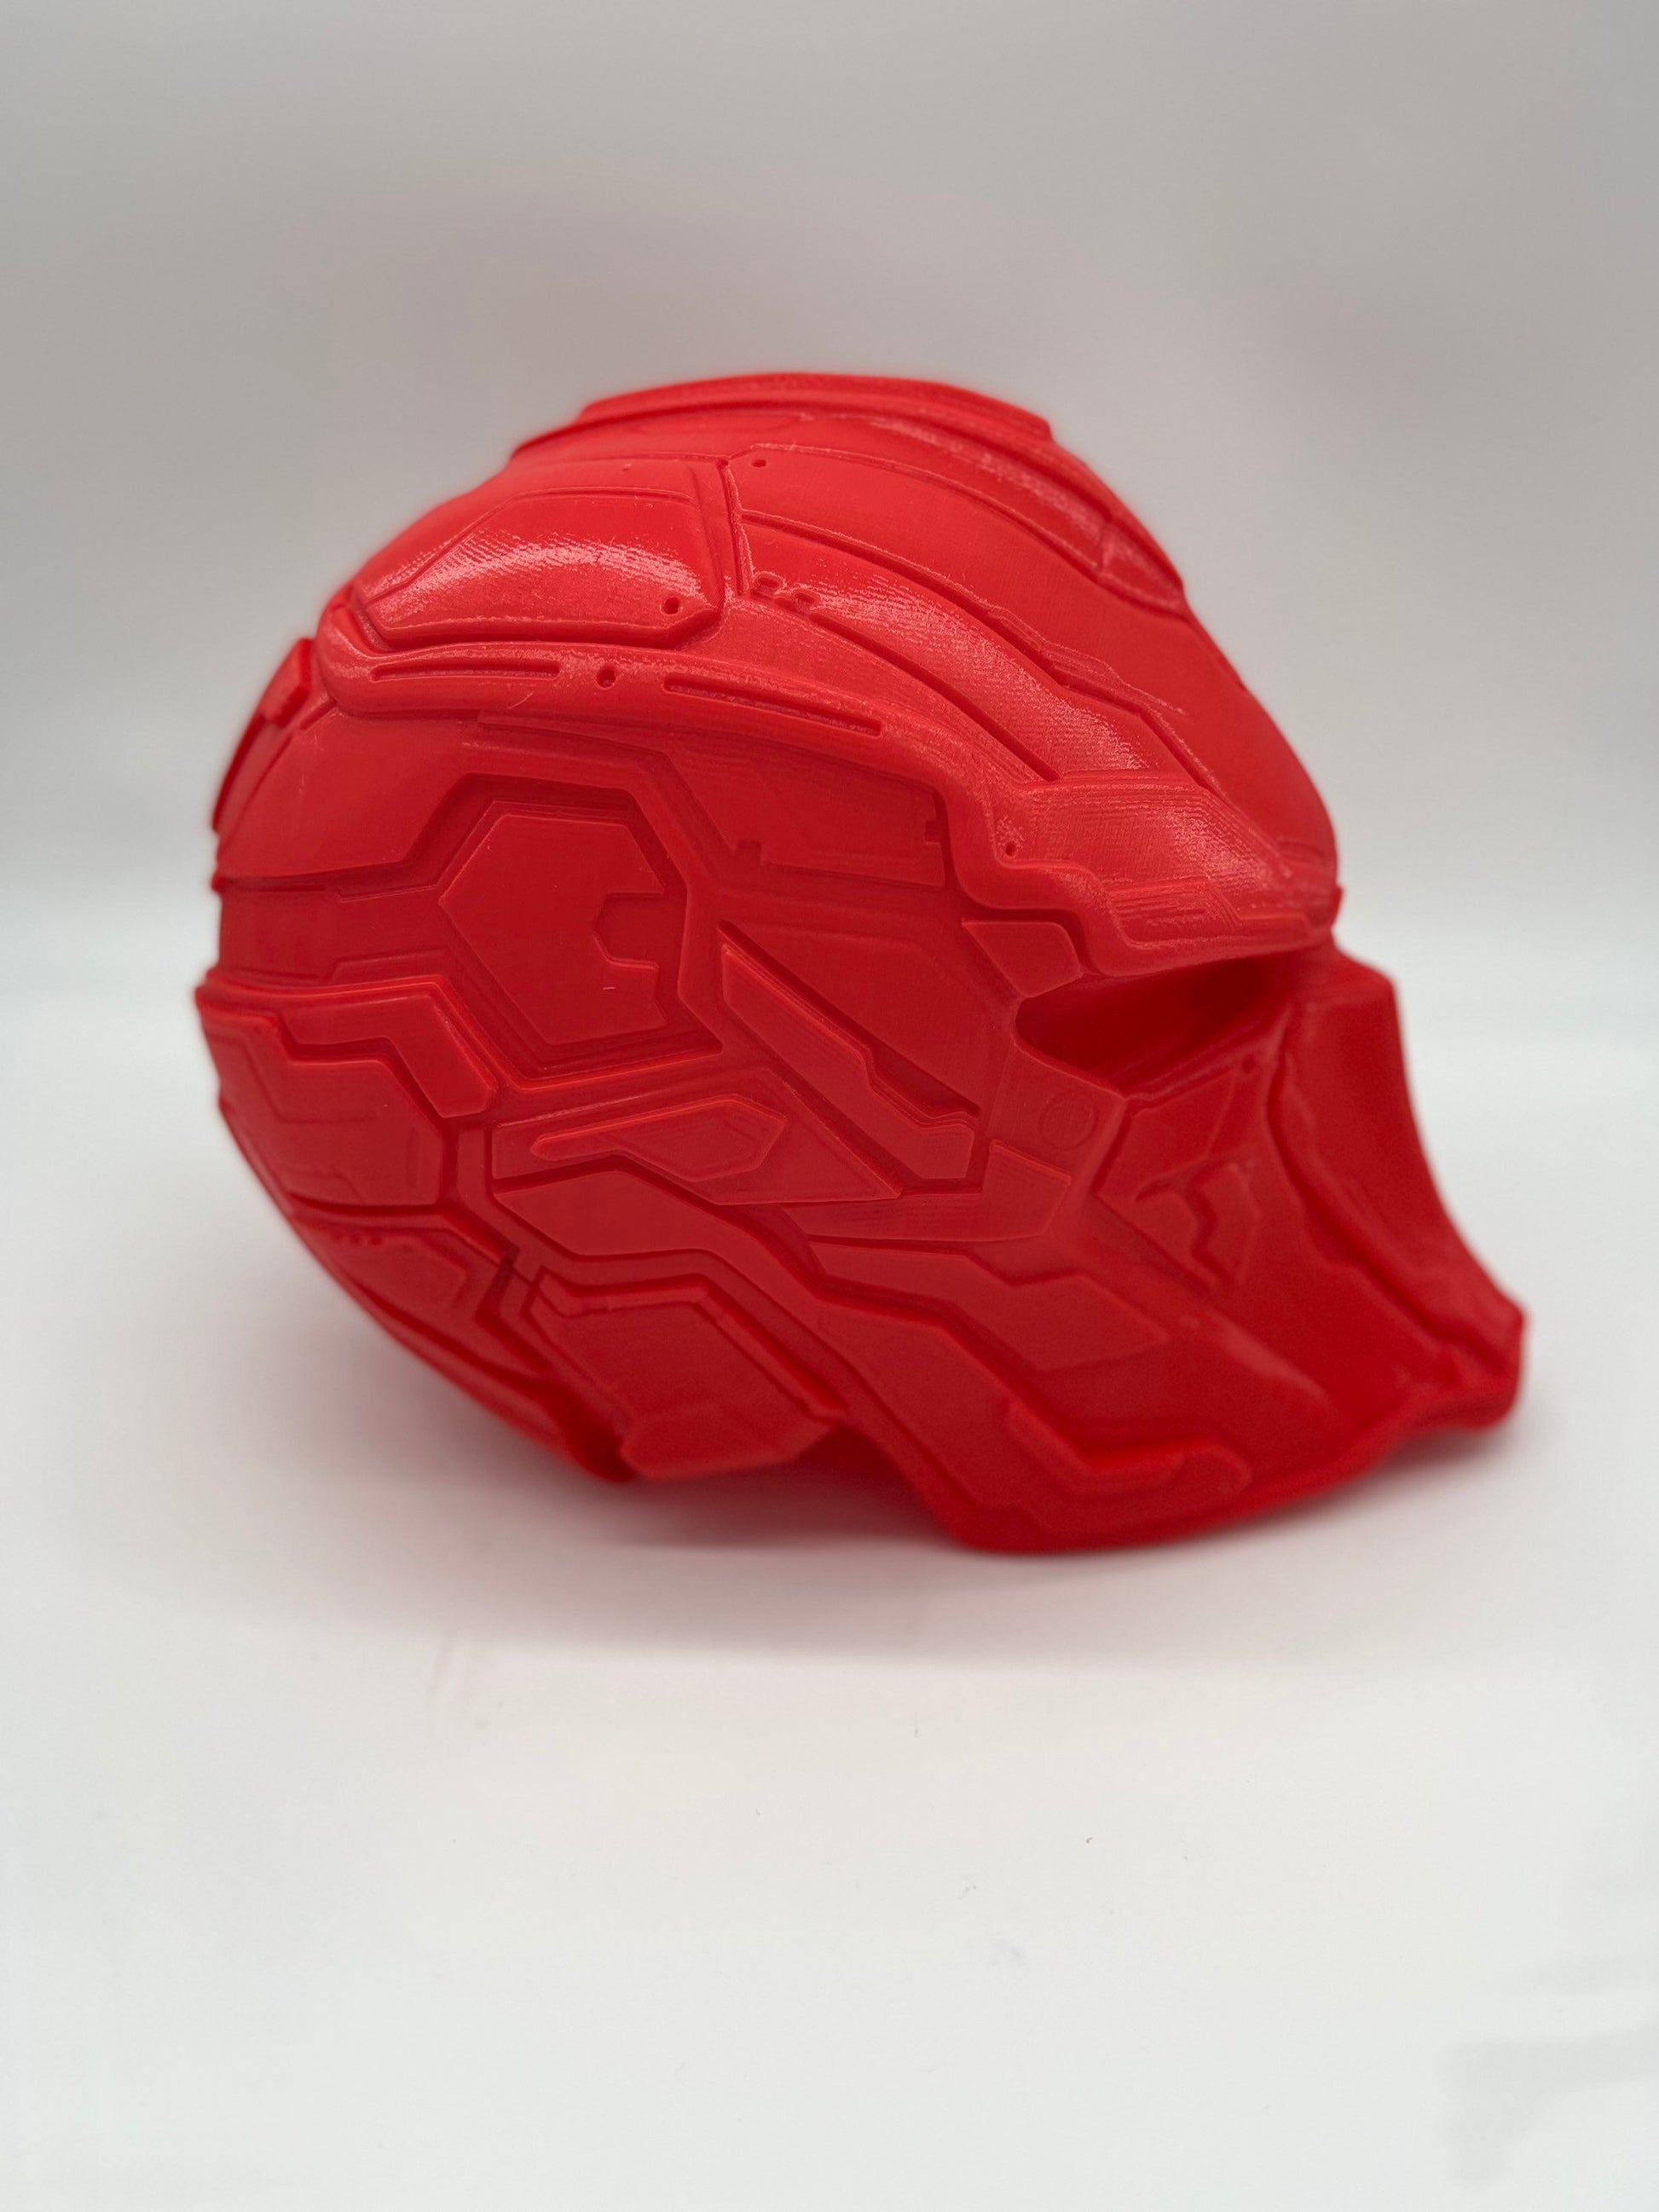 Red Hood Samurai Concept Cosplay Helmet